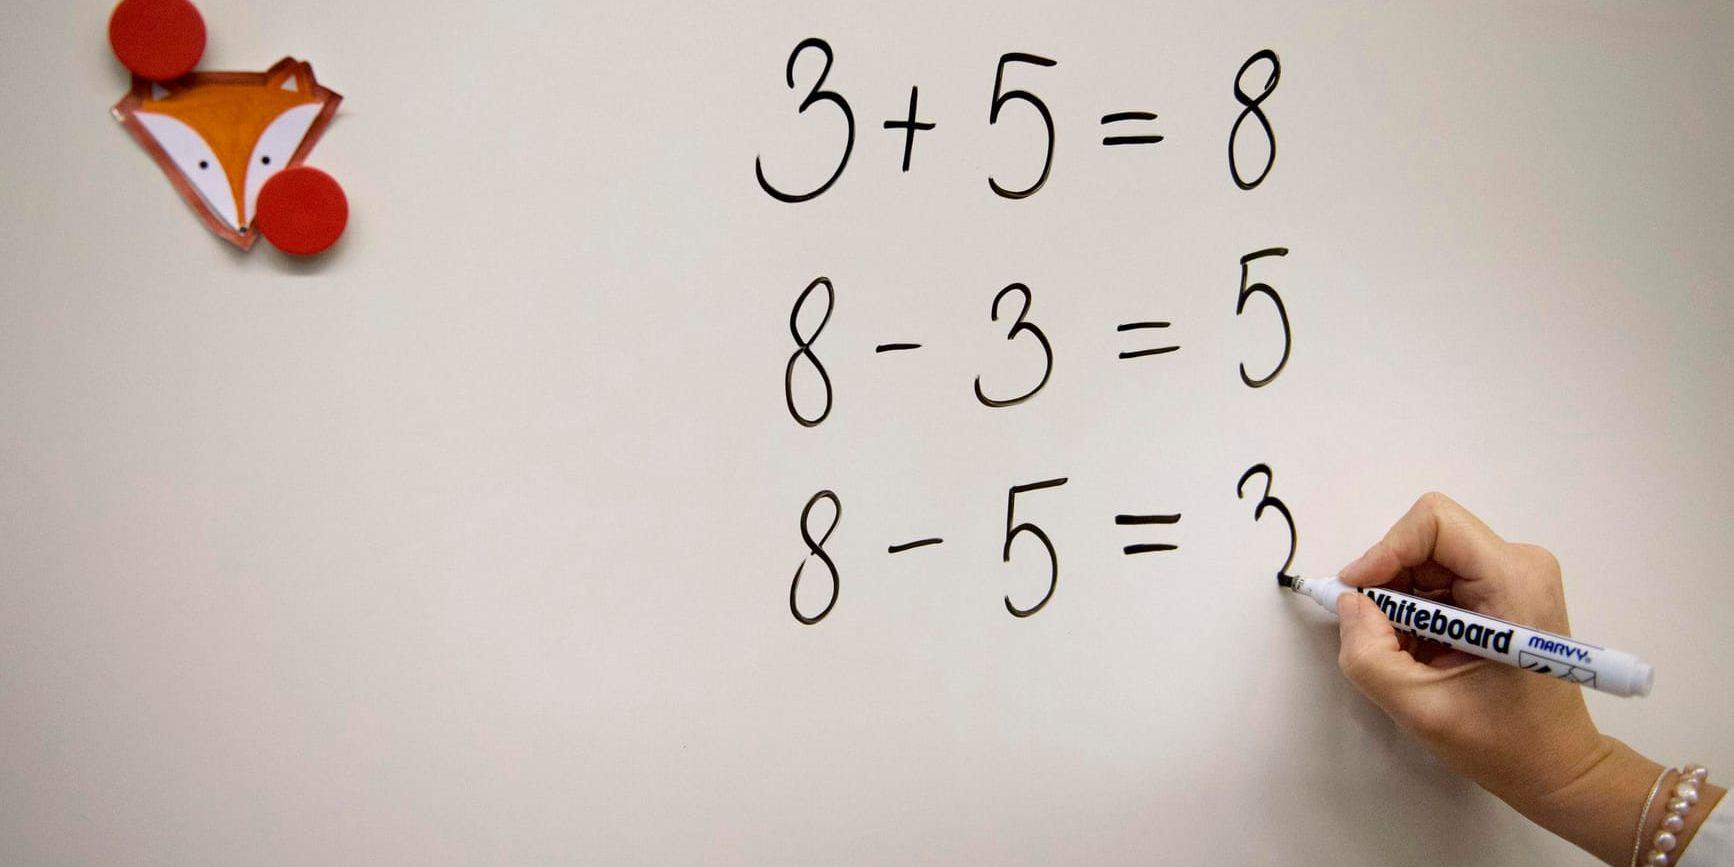 Det finns en poäng i att låta eleverna lära sig behärska matematiska regler utantill. Då blir de bättre på matte. Arkivbild.